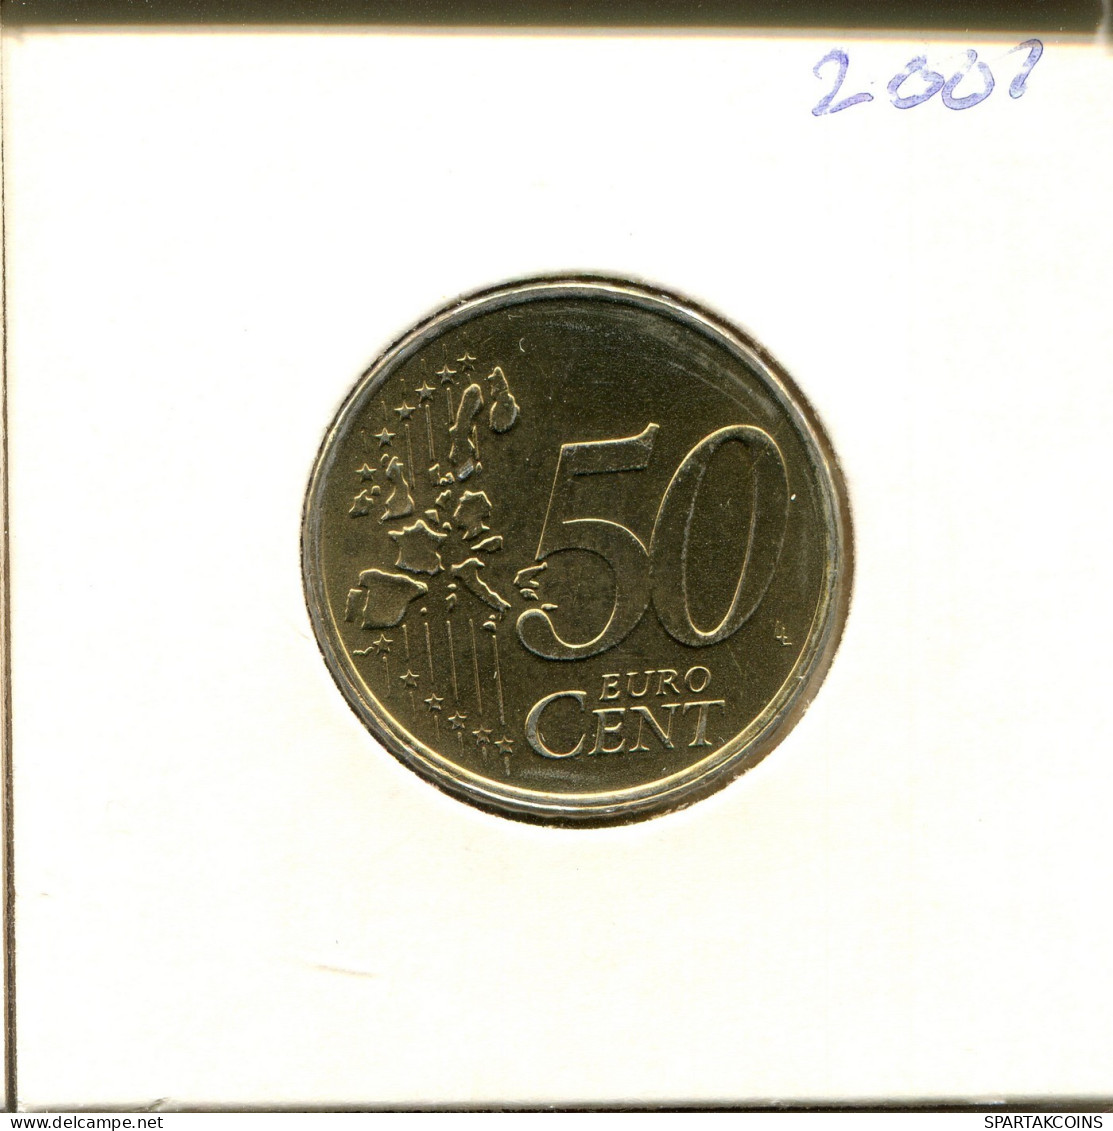 50 EURO CENTS 2001 NEERLANDÉS NETHERLANDS Moneda #EU279.E.A - Nederland